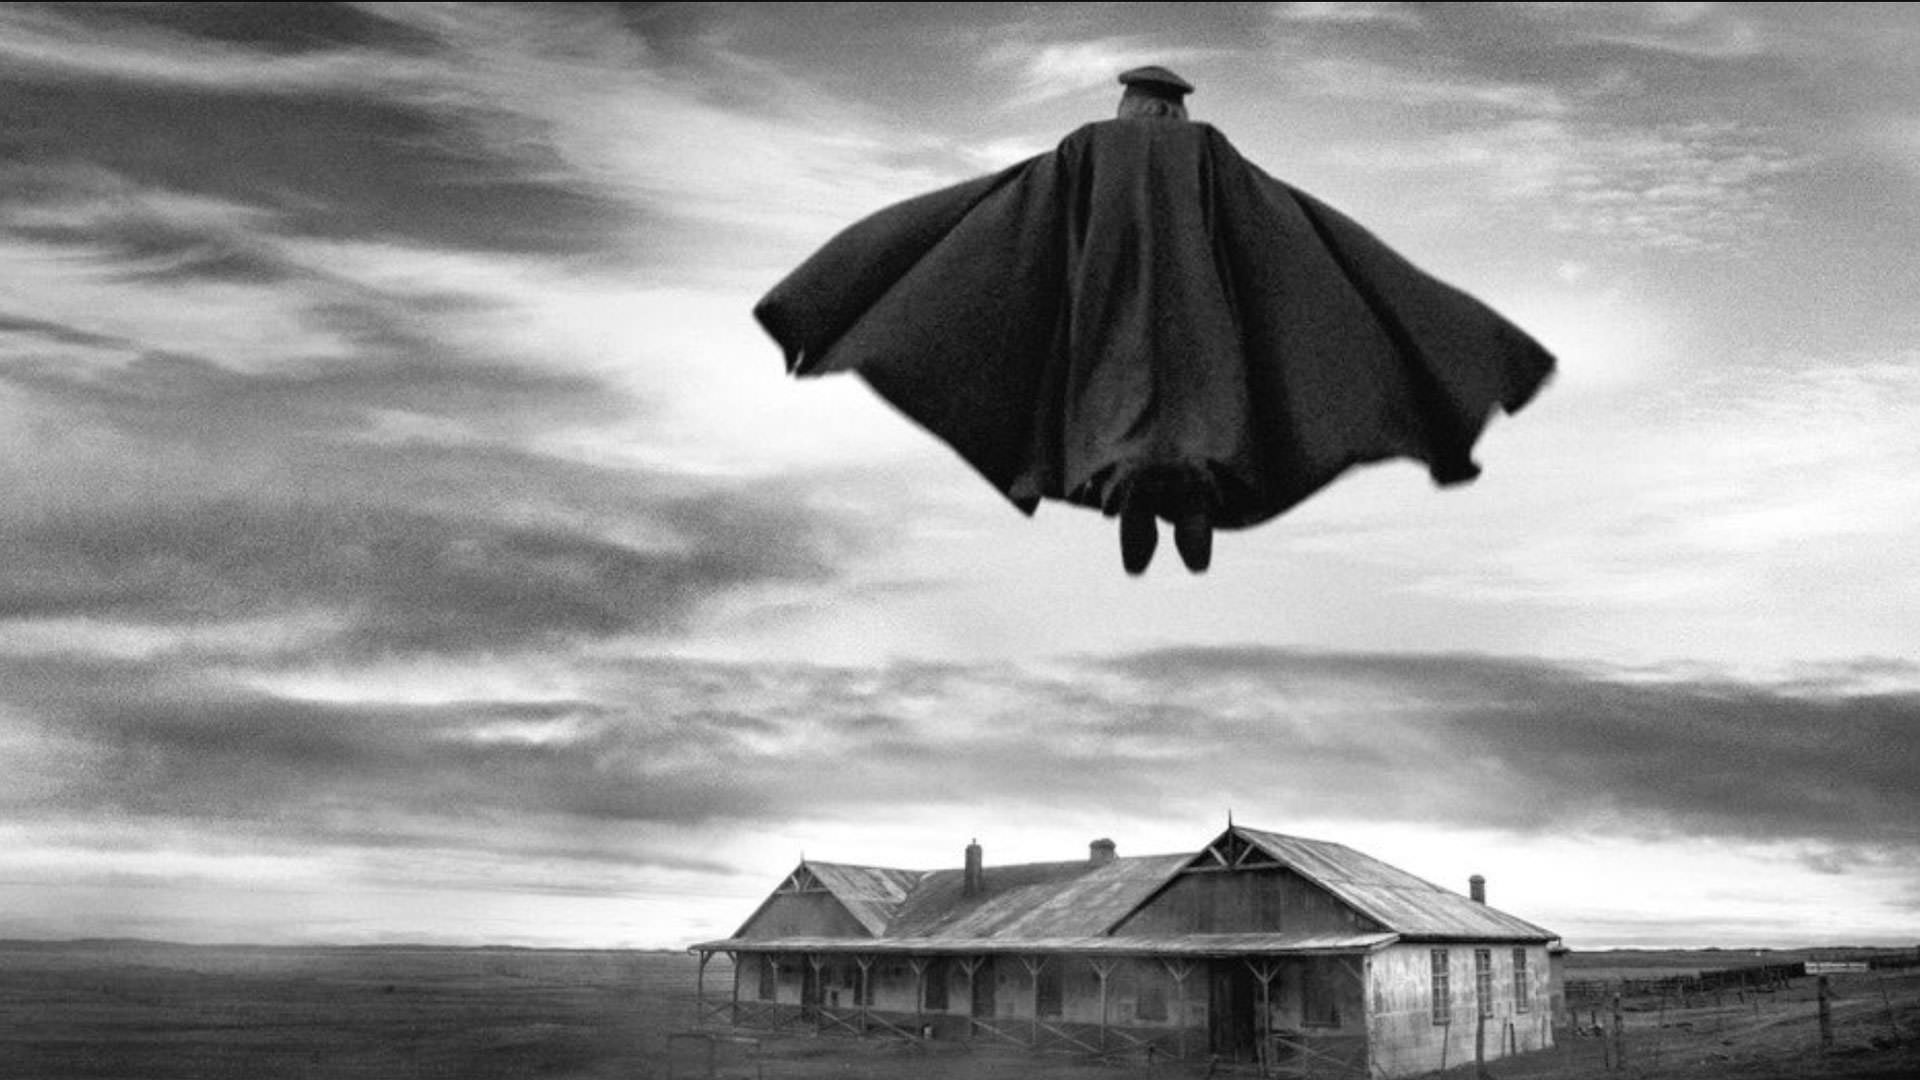 مردی با لباس نظامی و یک شنل بلند بر فراز خانه‌ای واقع در یک دشت پرواز می‌کند در نمایی سیاه و سفید از فیلم کنت به کارگردانی پابلو لارائین